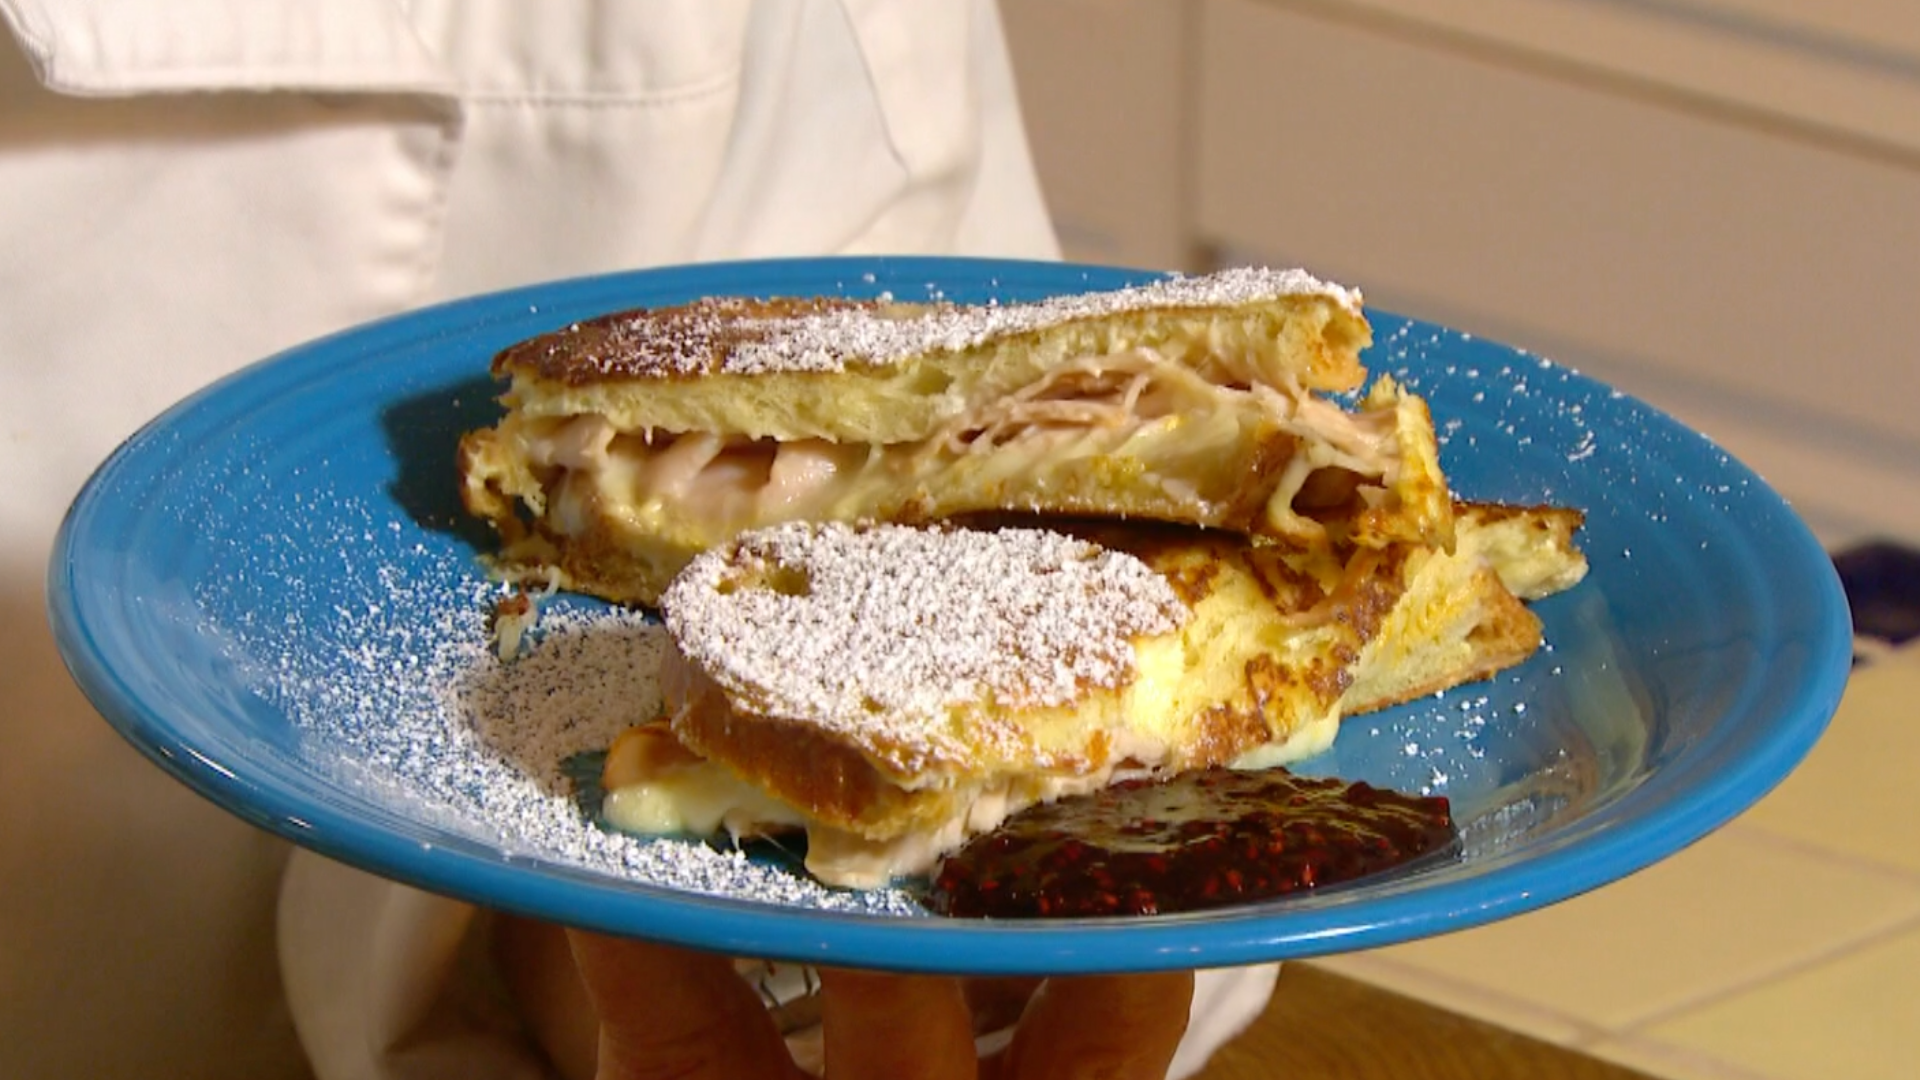 Here's how to make a delicious Monte Cristo sandwich